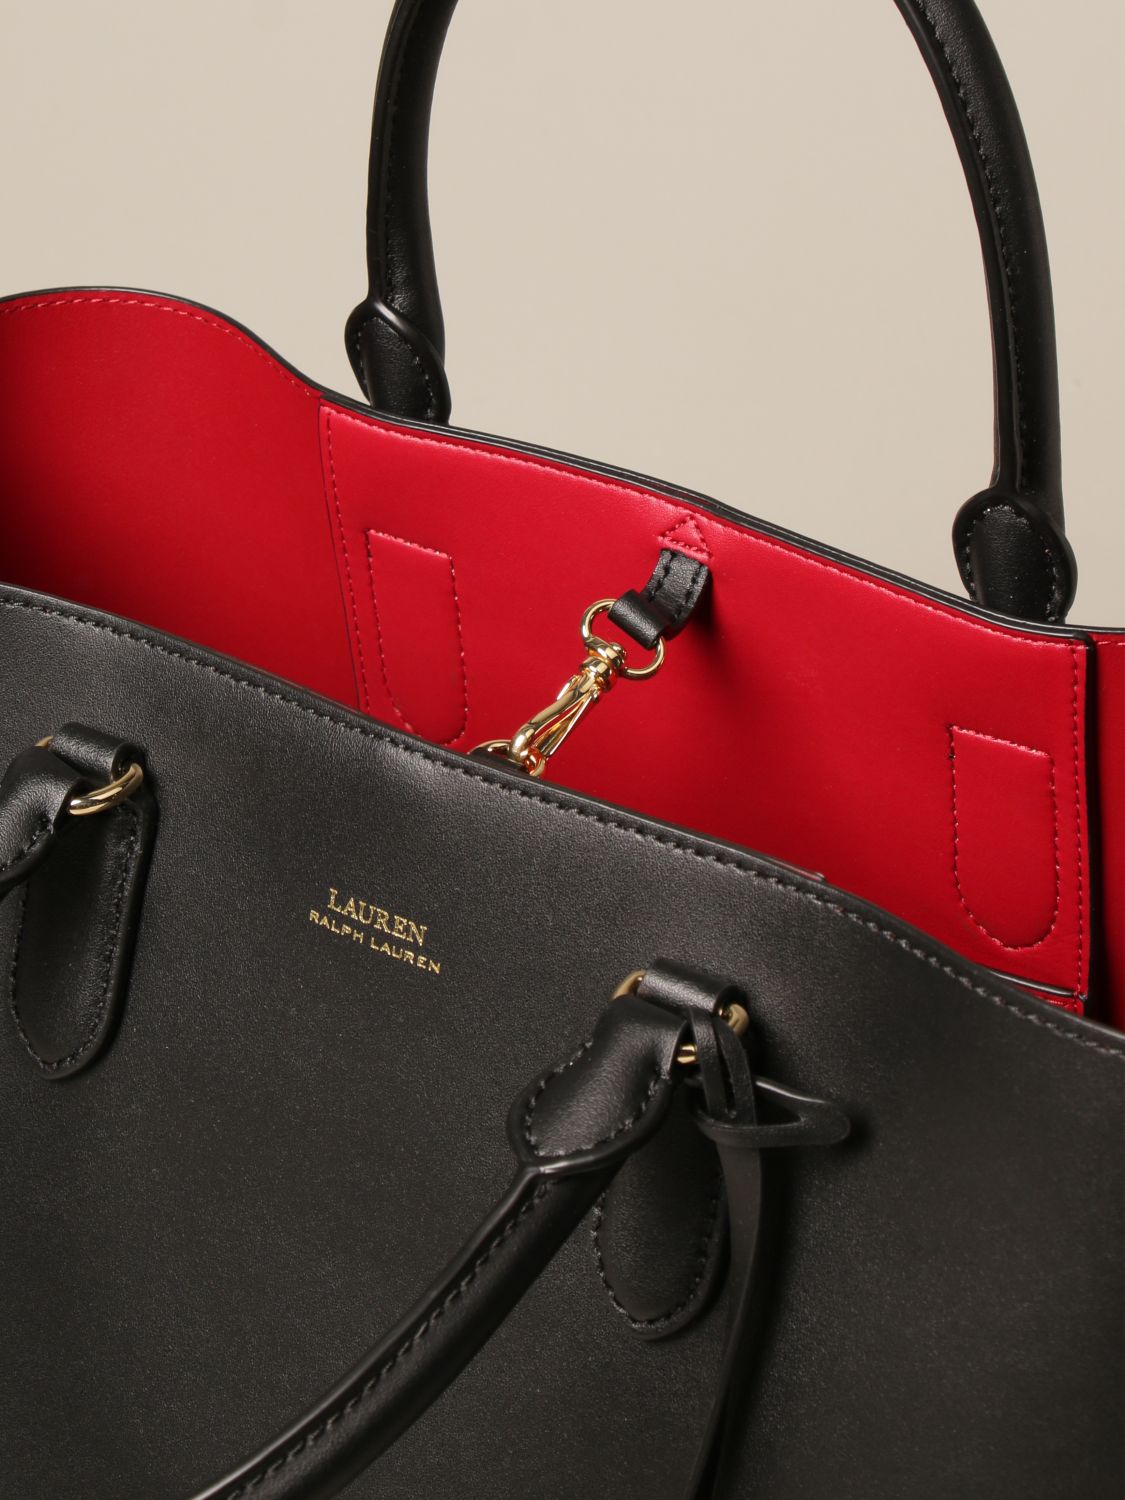 LAUREN RALPH LAUREN: leather handbag | Tote Bags Lauren Ralph Lauren Women Black | Tote Bags 